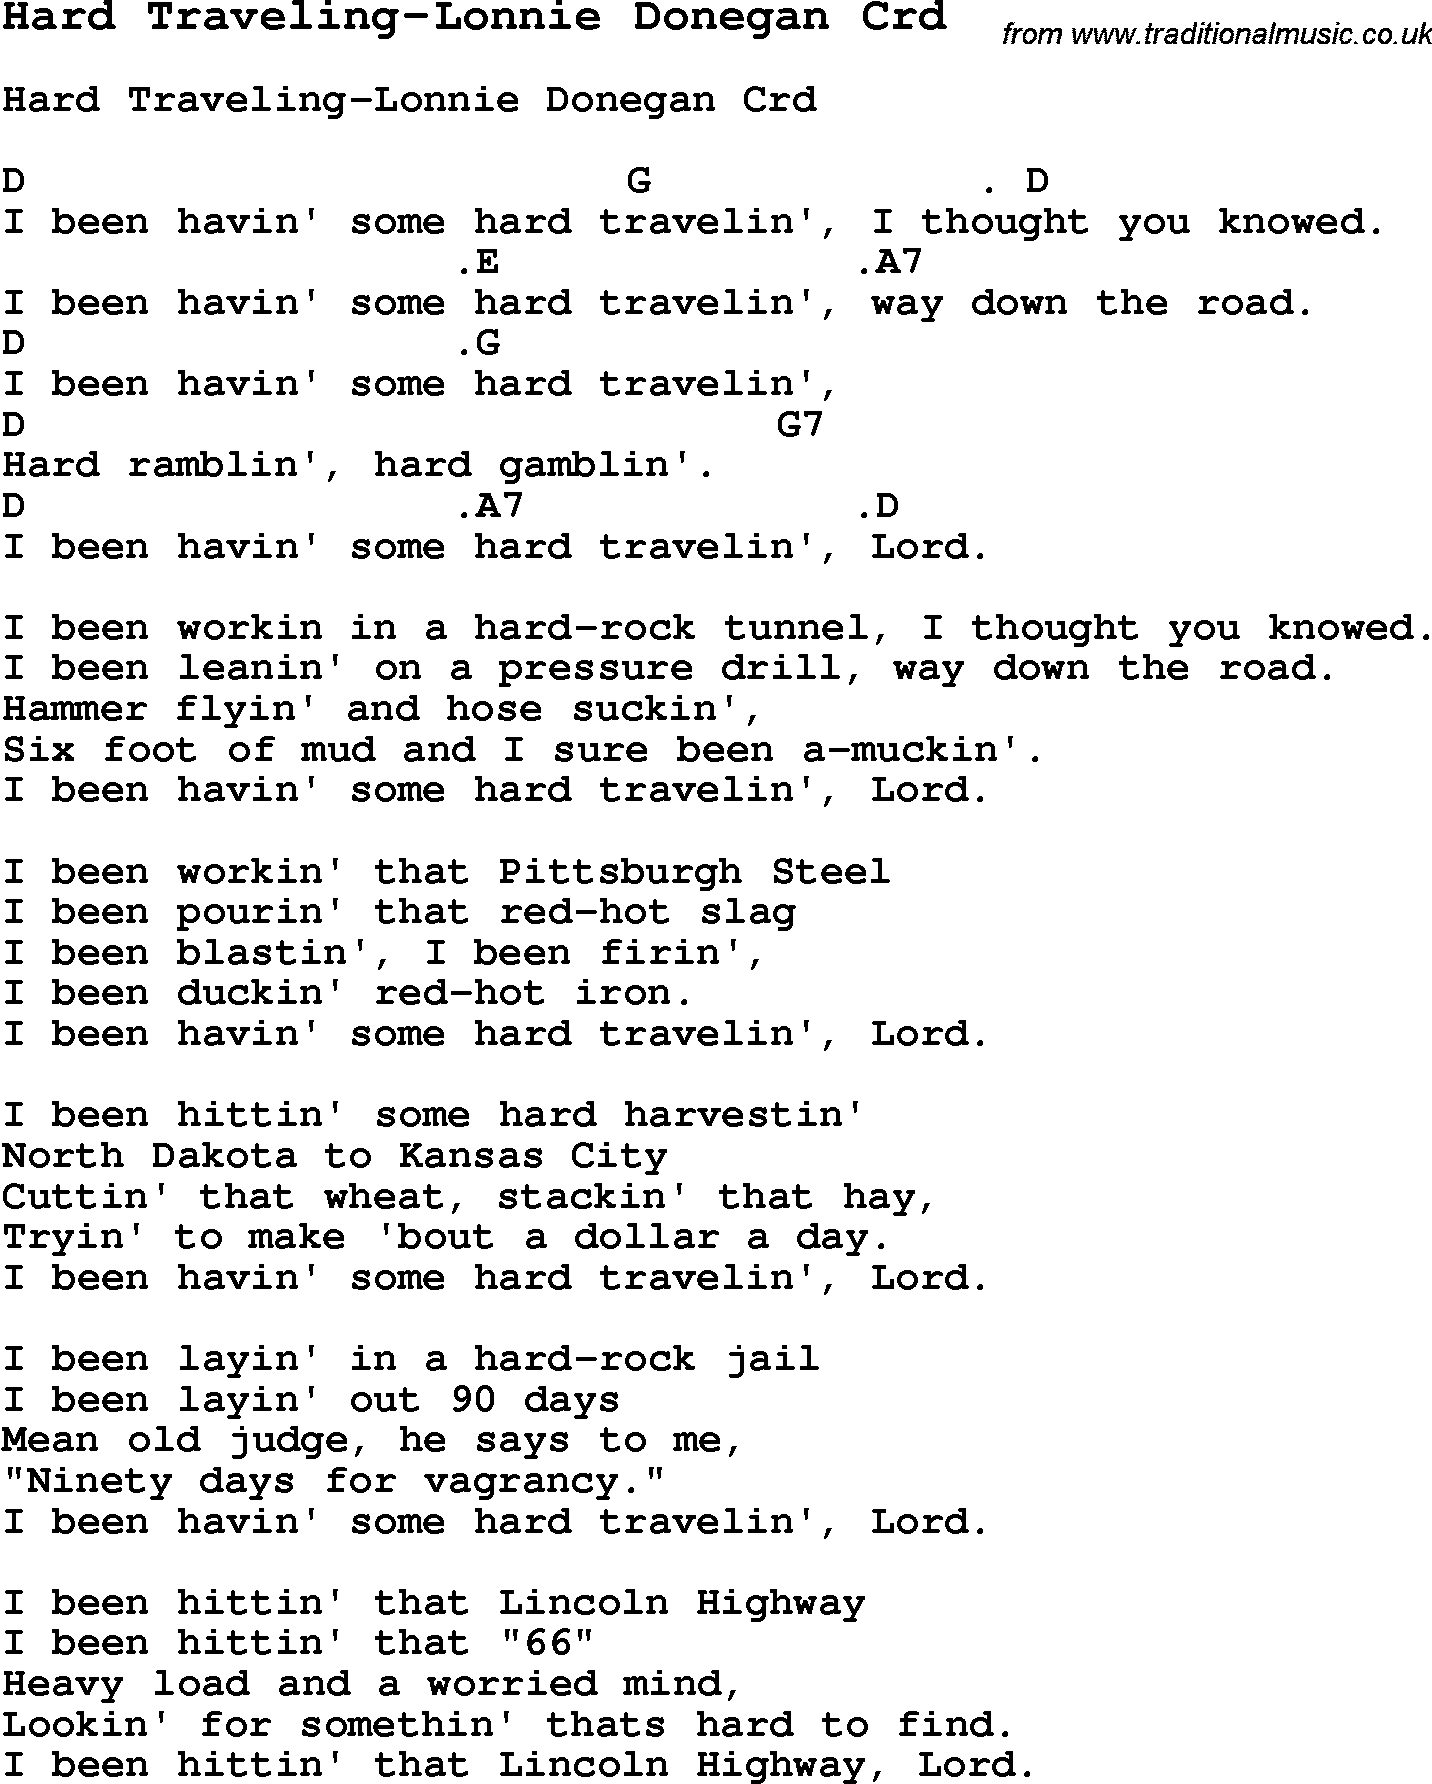 Skiffle Song Lyrics for Hard Traveling-Lonnie Donegan with chords for Mandolin, Ukulele, Guitar, Banjo etc.